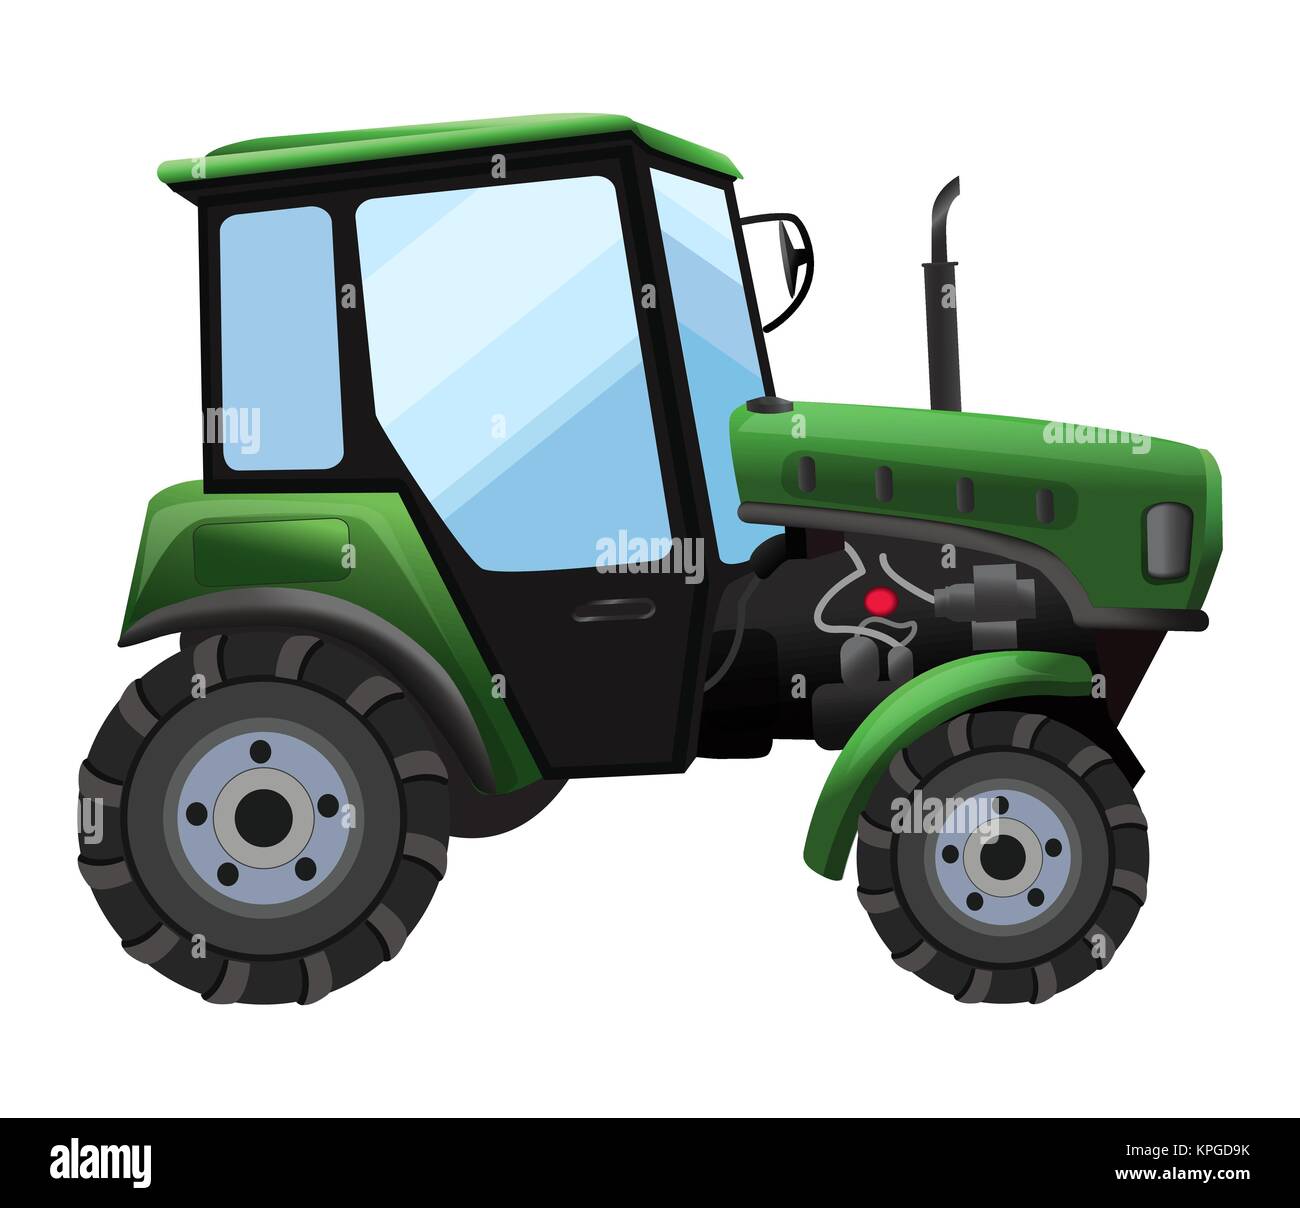 Traktor. Vector Illustration der grünen Traktor in einer flachen Stil auf weißem Hintergrund. Schwere landwirtschaftliche Maschinen für den Außendienst Stock Vektor